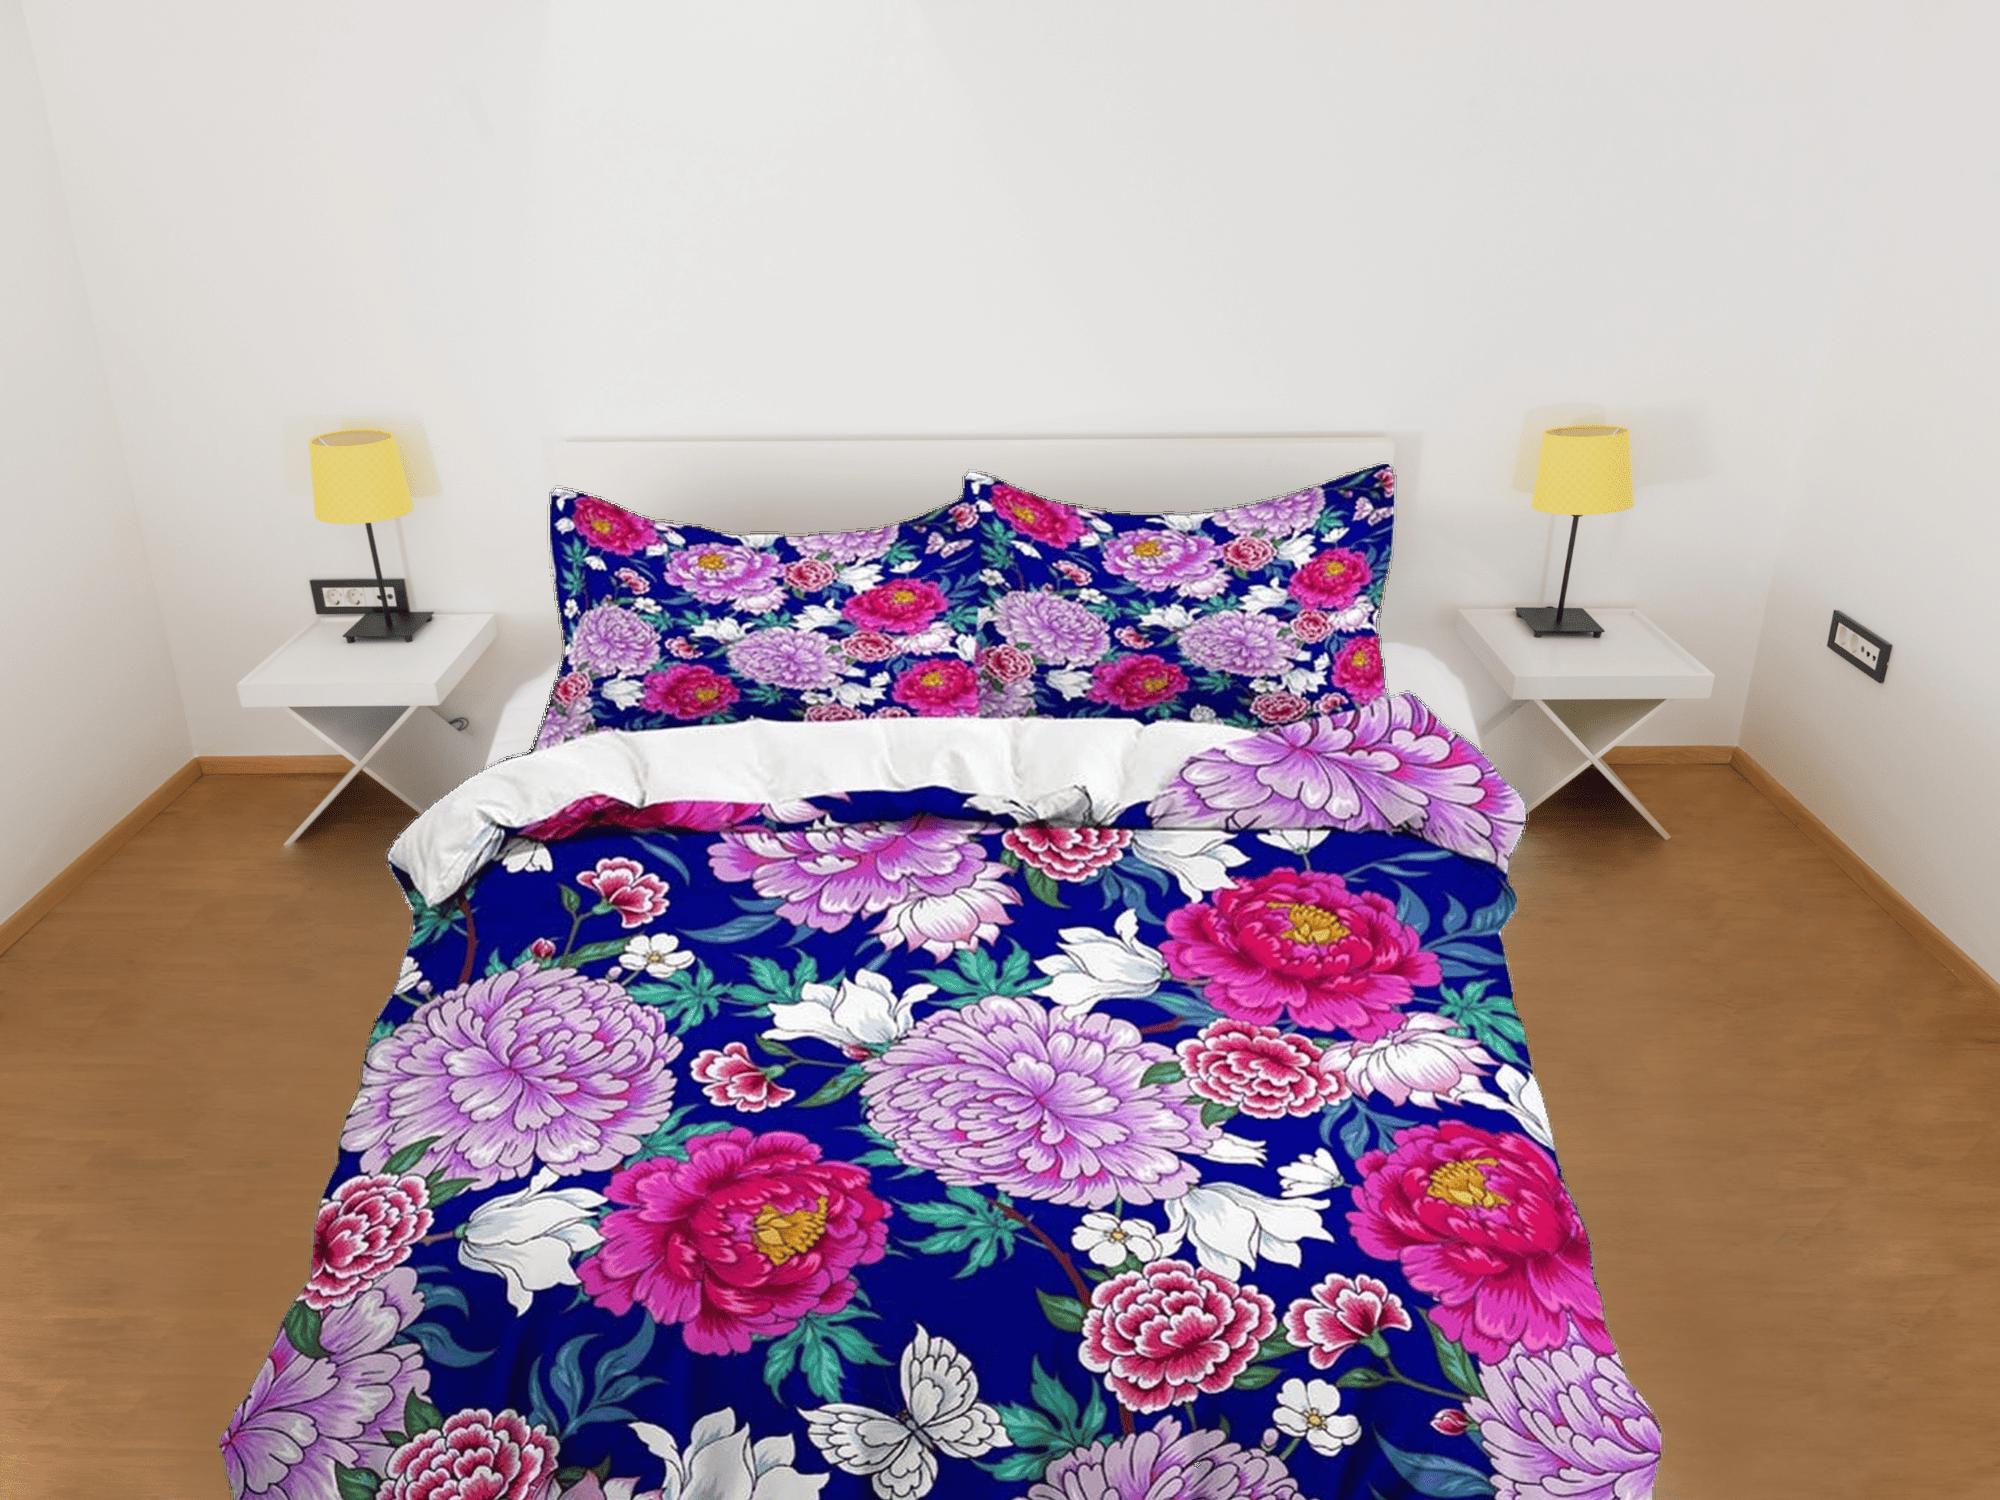 daintyduvet Chrysanthemum floral bedding, luxury purple duvet cover queen, king, boho duvet, designer bedding, aesthetic bedding, maximalist decor